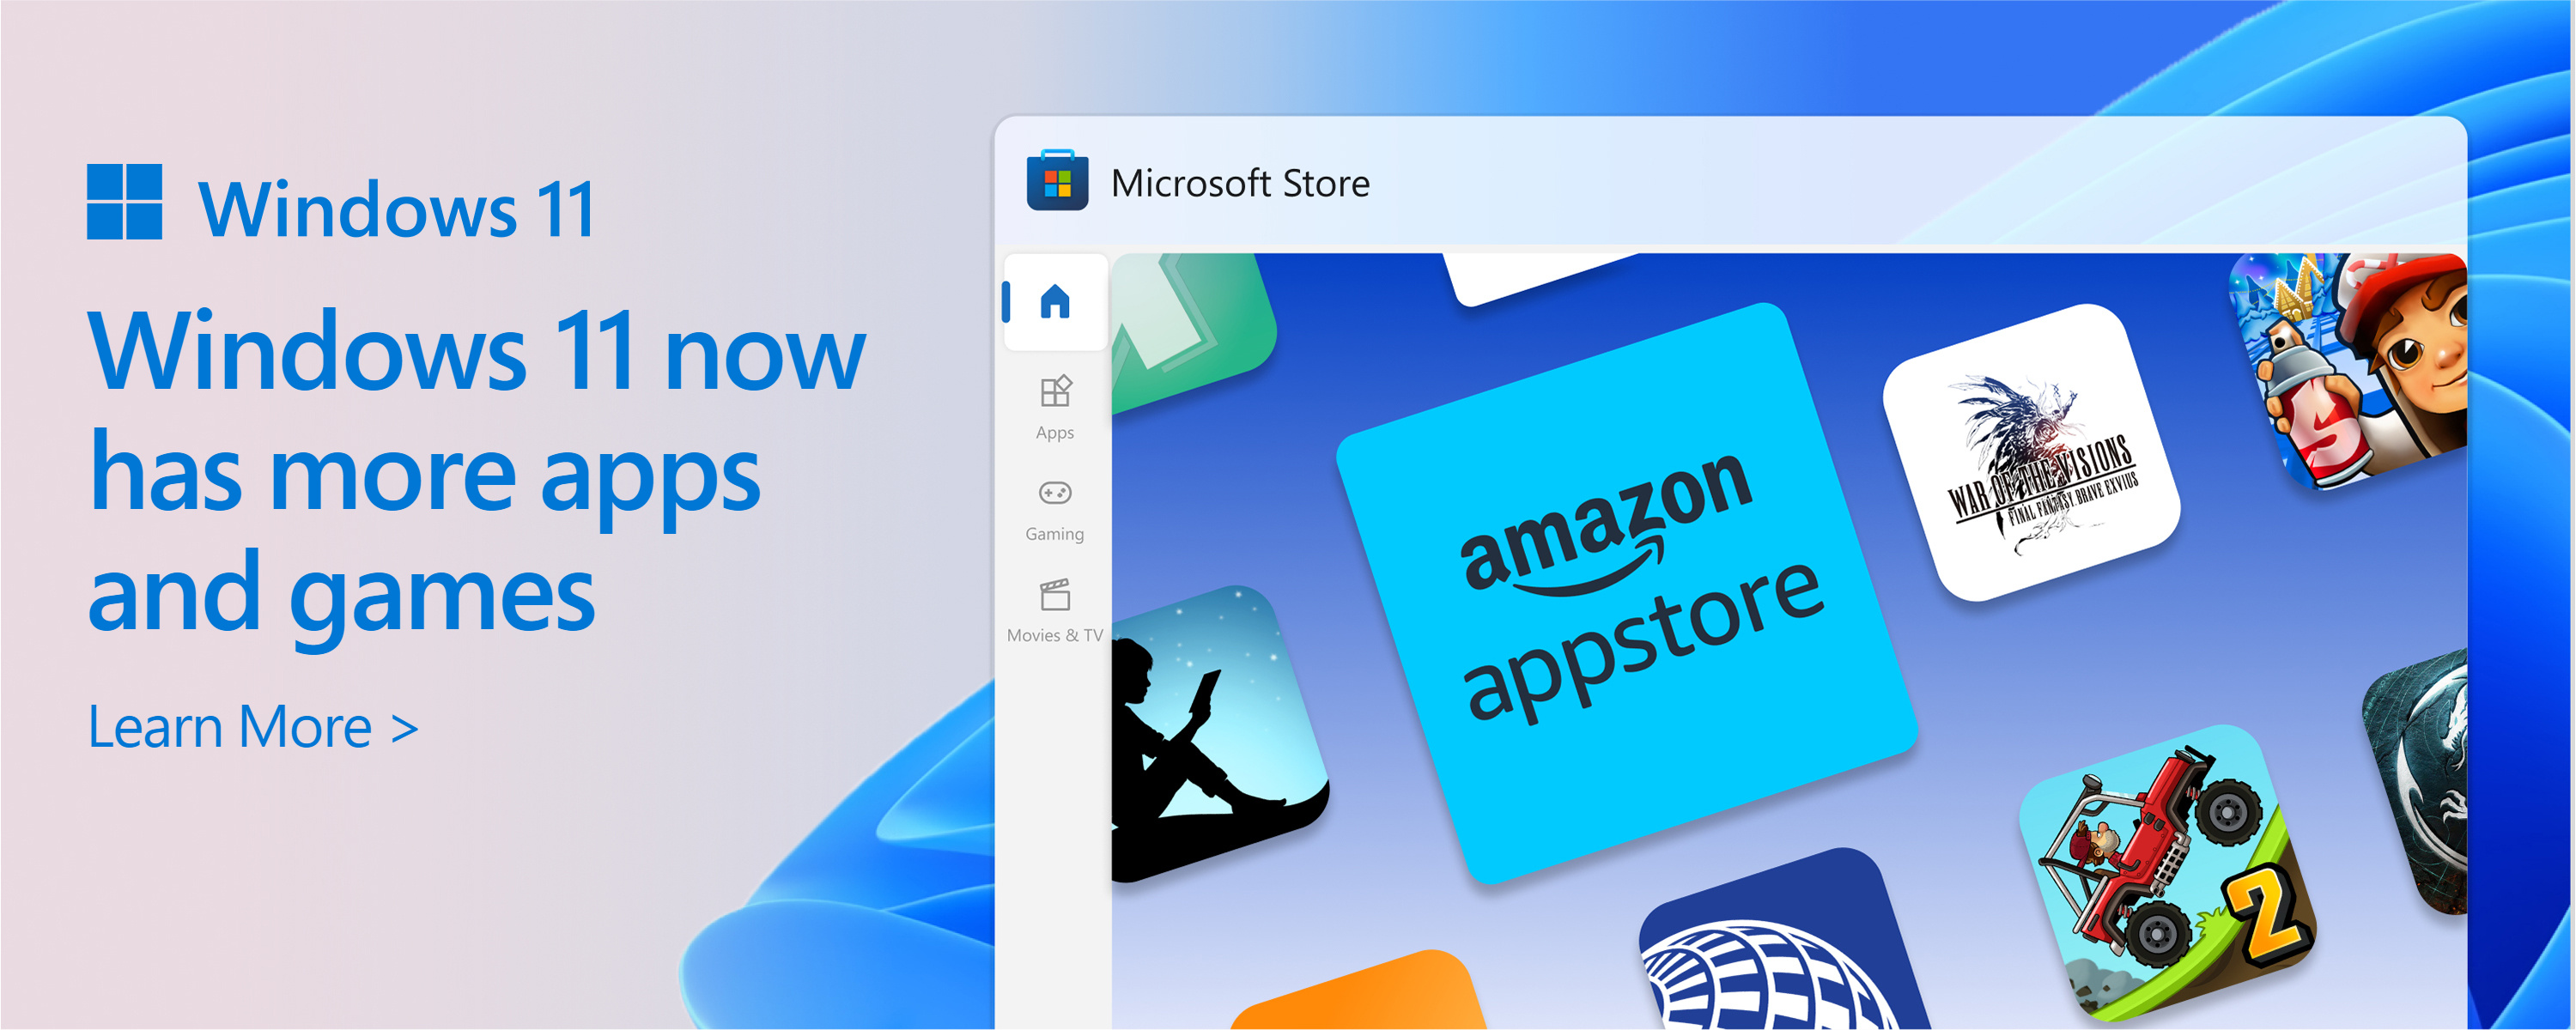 Capture d’écran du Microsoft Store avec le texte : le catalogue du Microsoft Store est en croissance. Windows 11 vous offre plus d’applications et de jeux dont vous avez besoin.